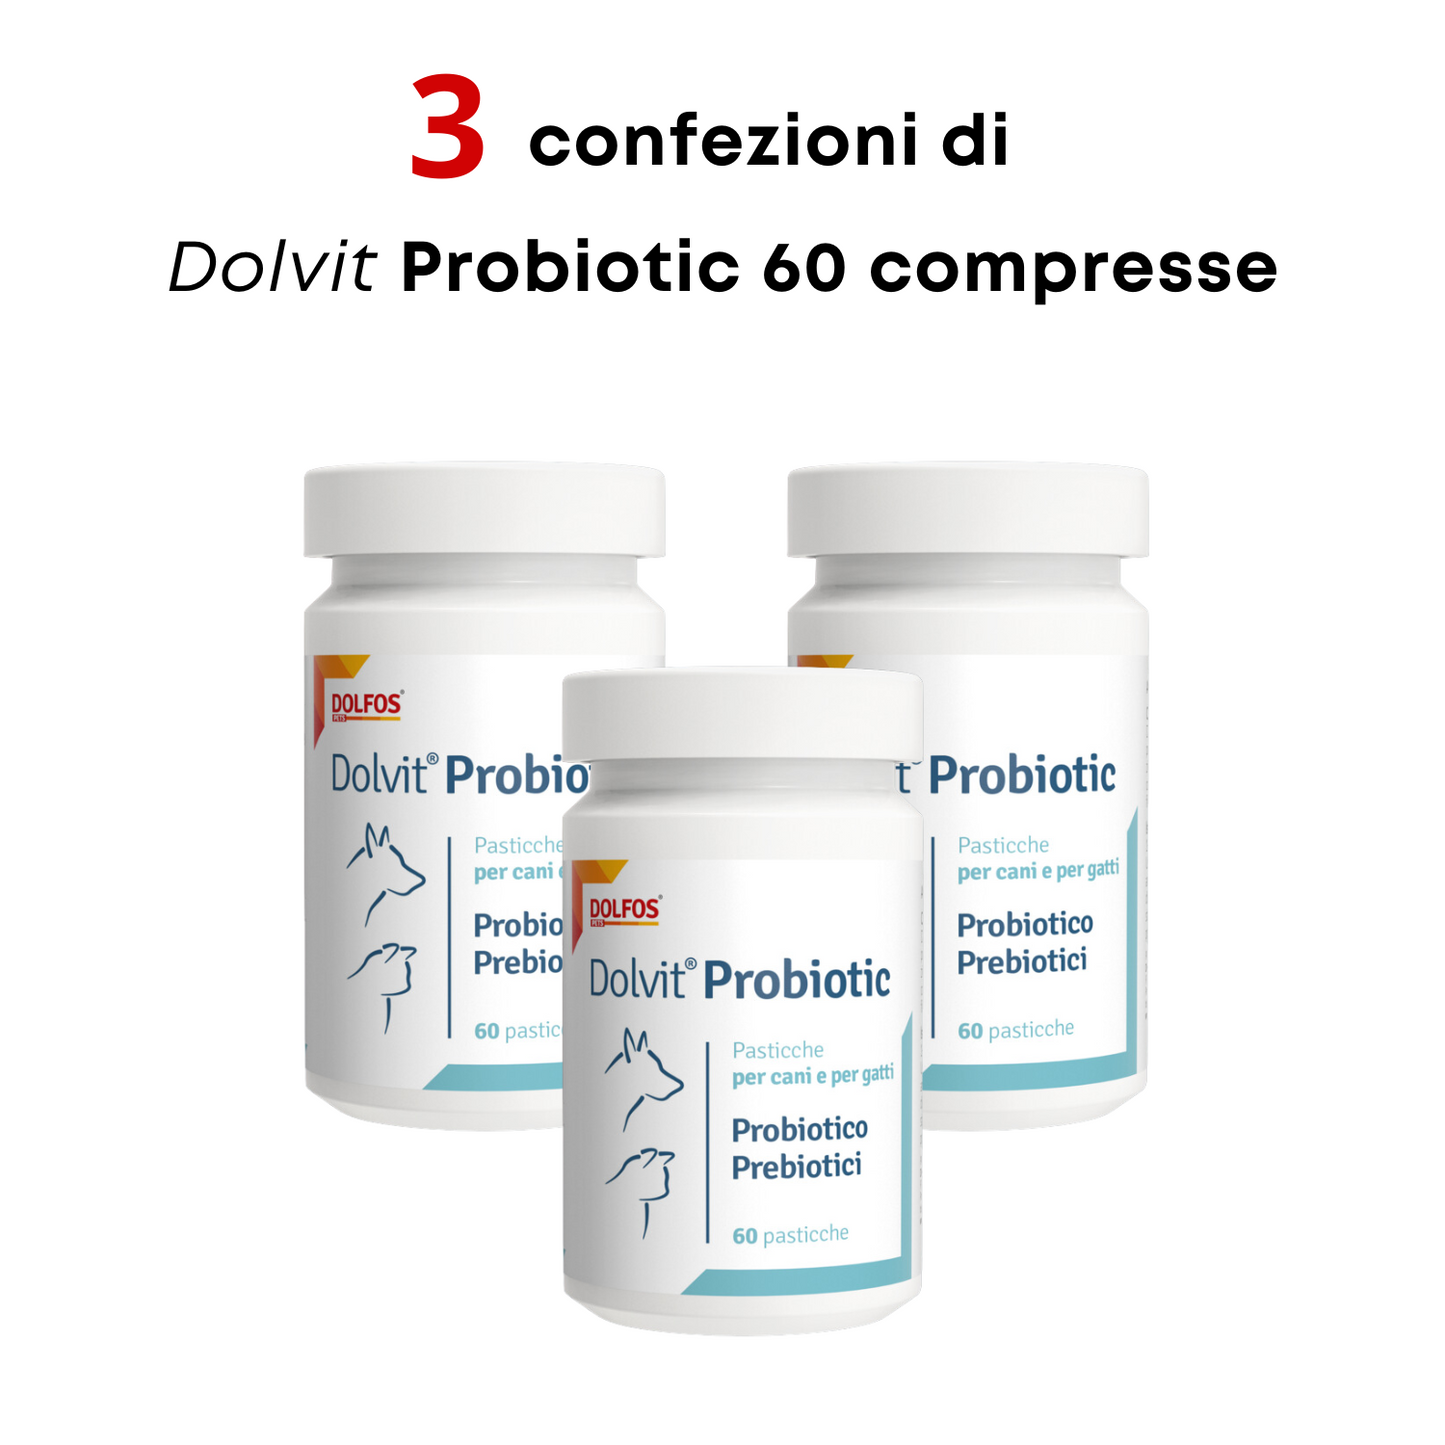 Dolvit Probiotic 60 "... probiotici e prebiotici MOS per ristabilire la flora batterica intestinale "